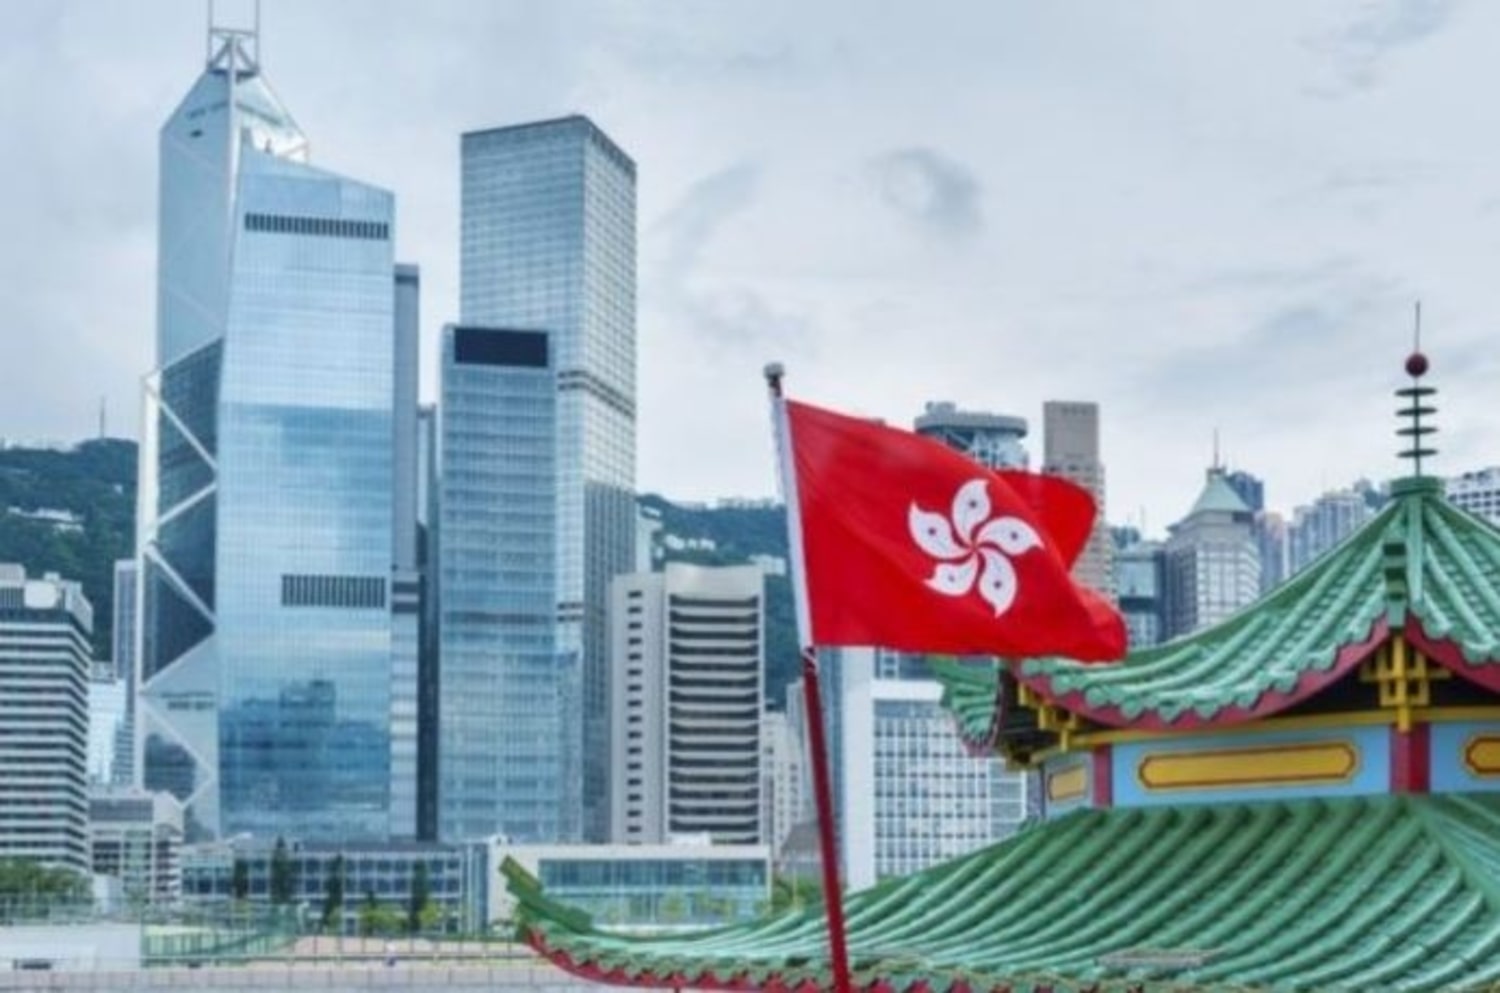 استفاده از بلاک چین برای مبارزه با سانسور در هنگ کنگ